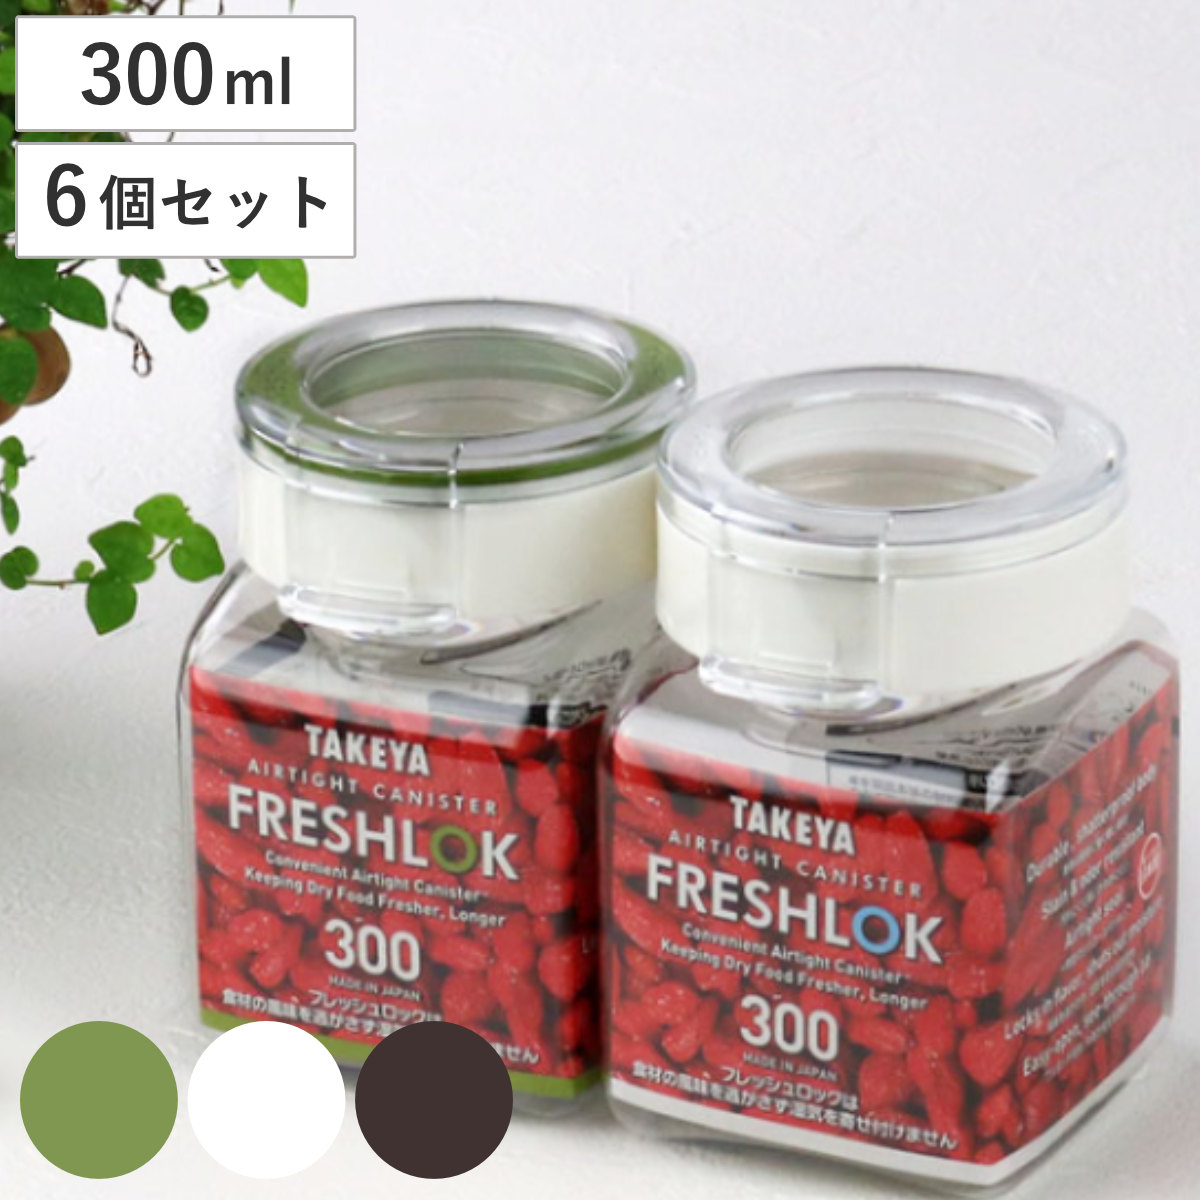 保存容器 300ml フレッシュロック 角型 お得な6個セット 選べるカラー 白 緑 茶